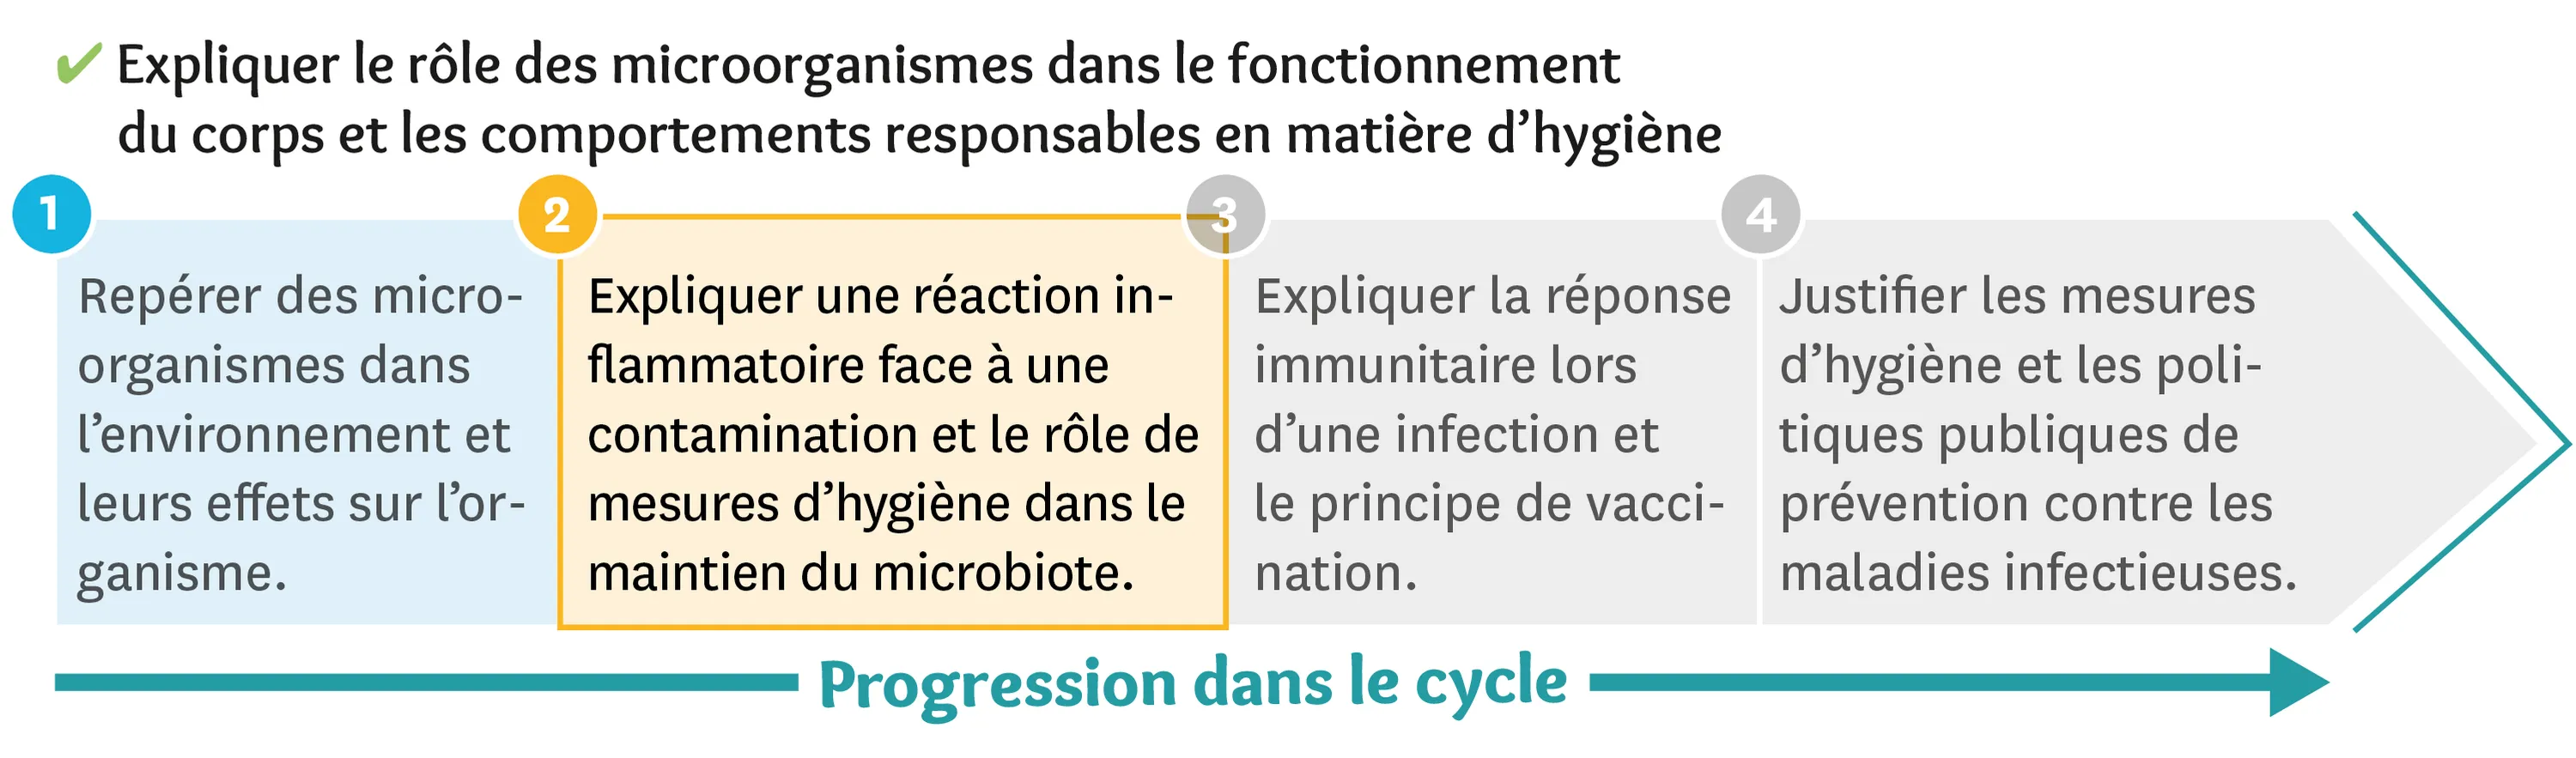 Progression dans le cycle des microorganismes dans le fonctionnement du corps et les comportements responsables en matière d'hygiène